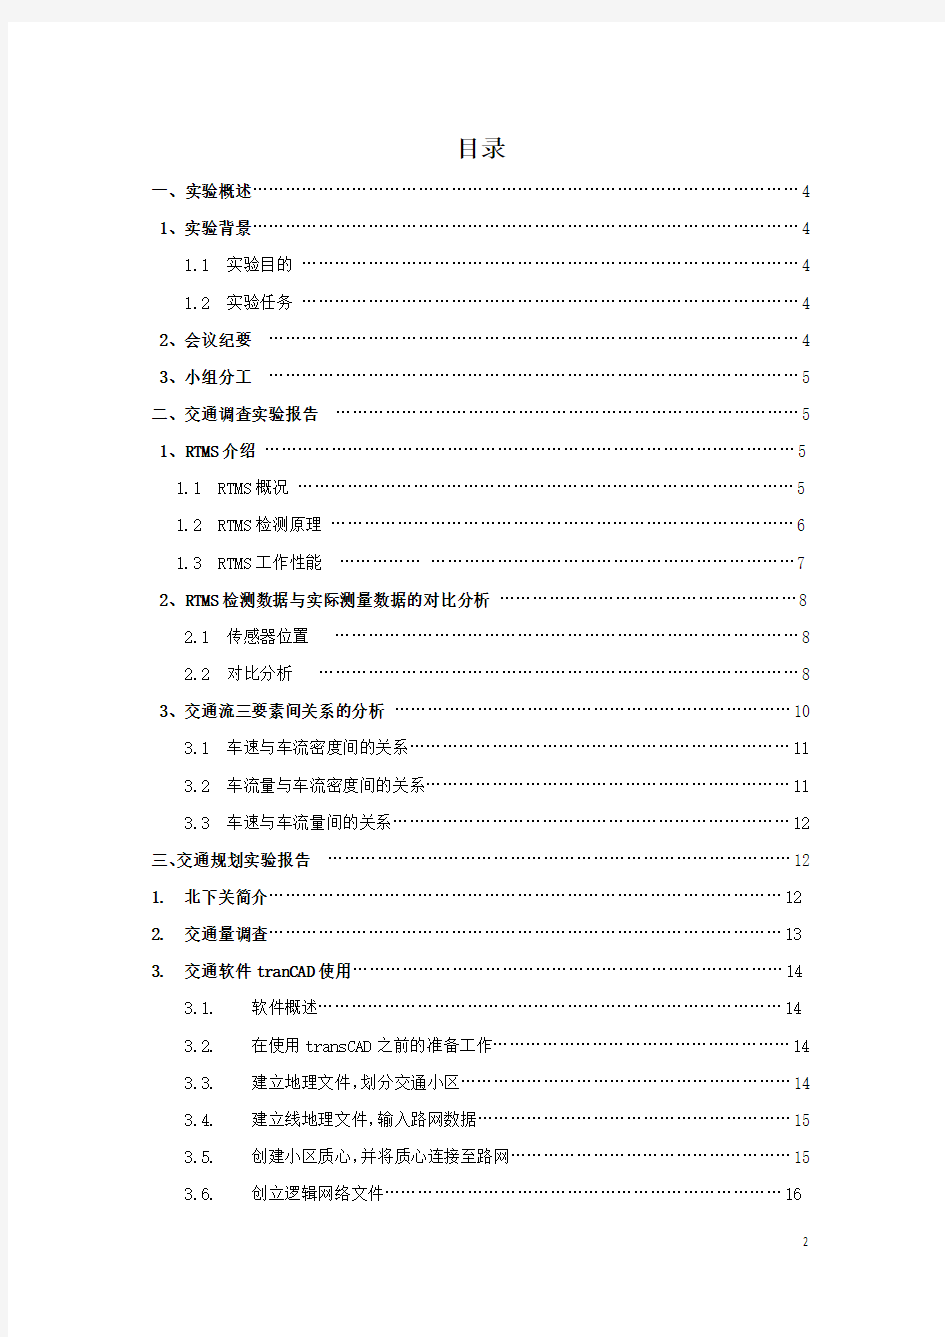 北京交通大学交通规划课程设计实验报告(最终版)